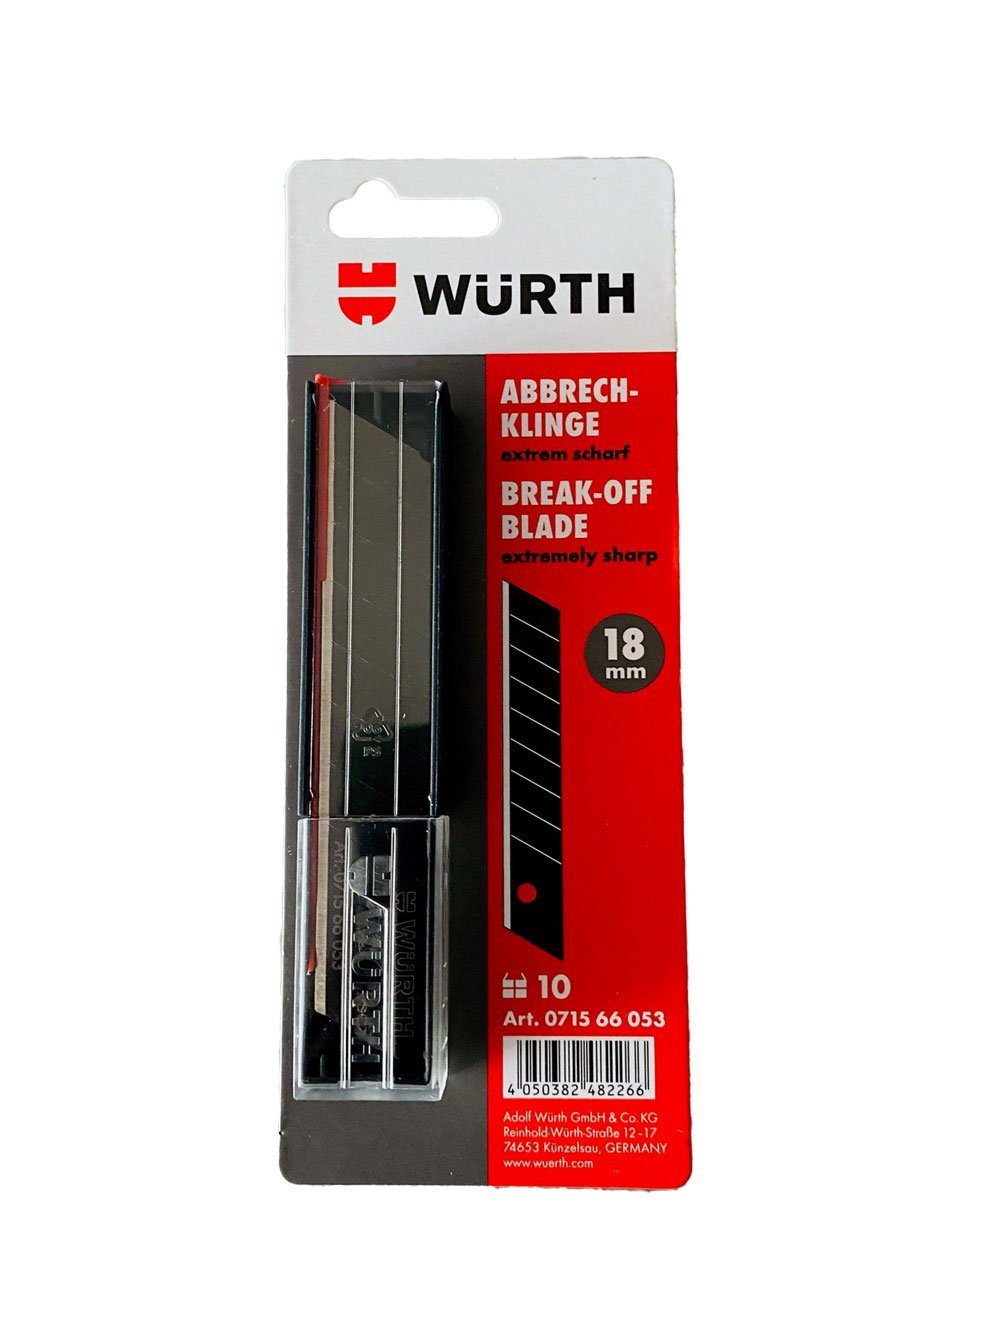 Würth Umluftmodul Würth 10x Abbrechklinge 18mm extrem scharf schwarz Schiebespender